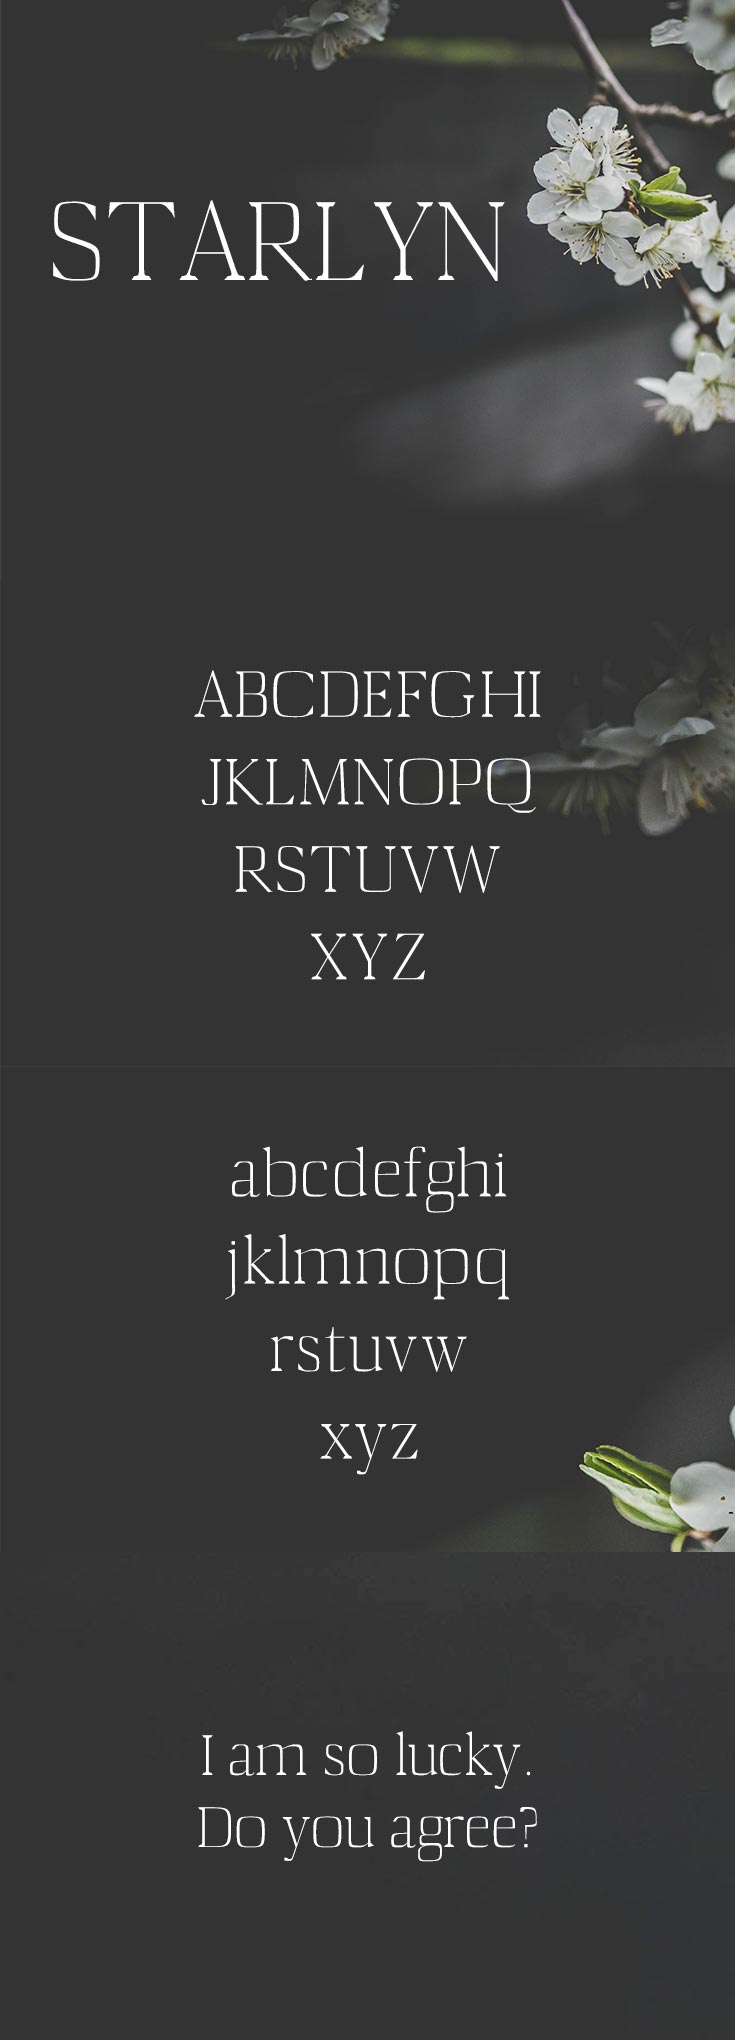 Free Starlyn Serif Font